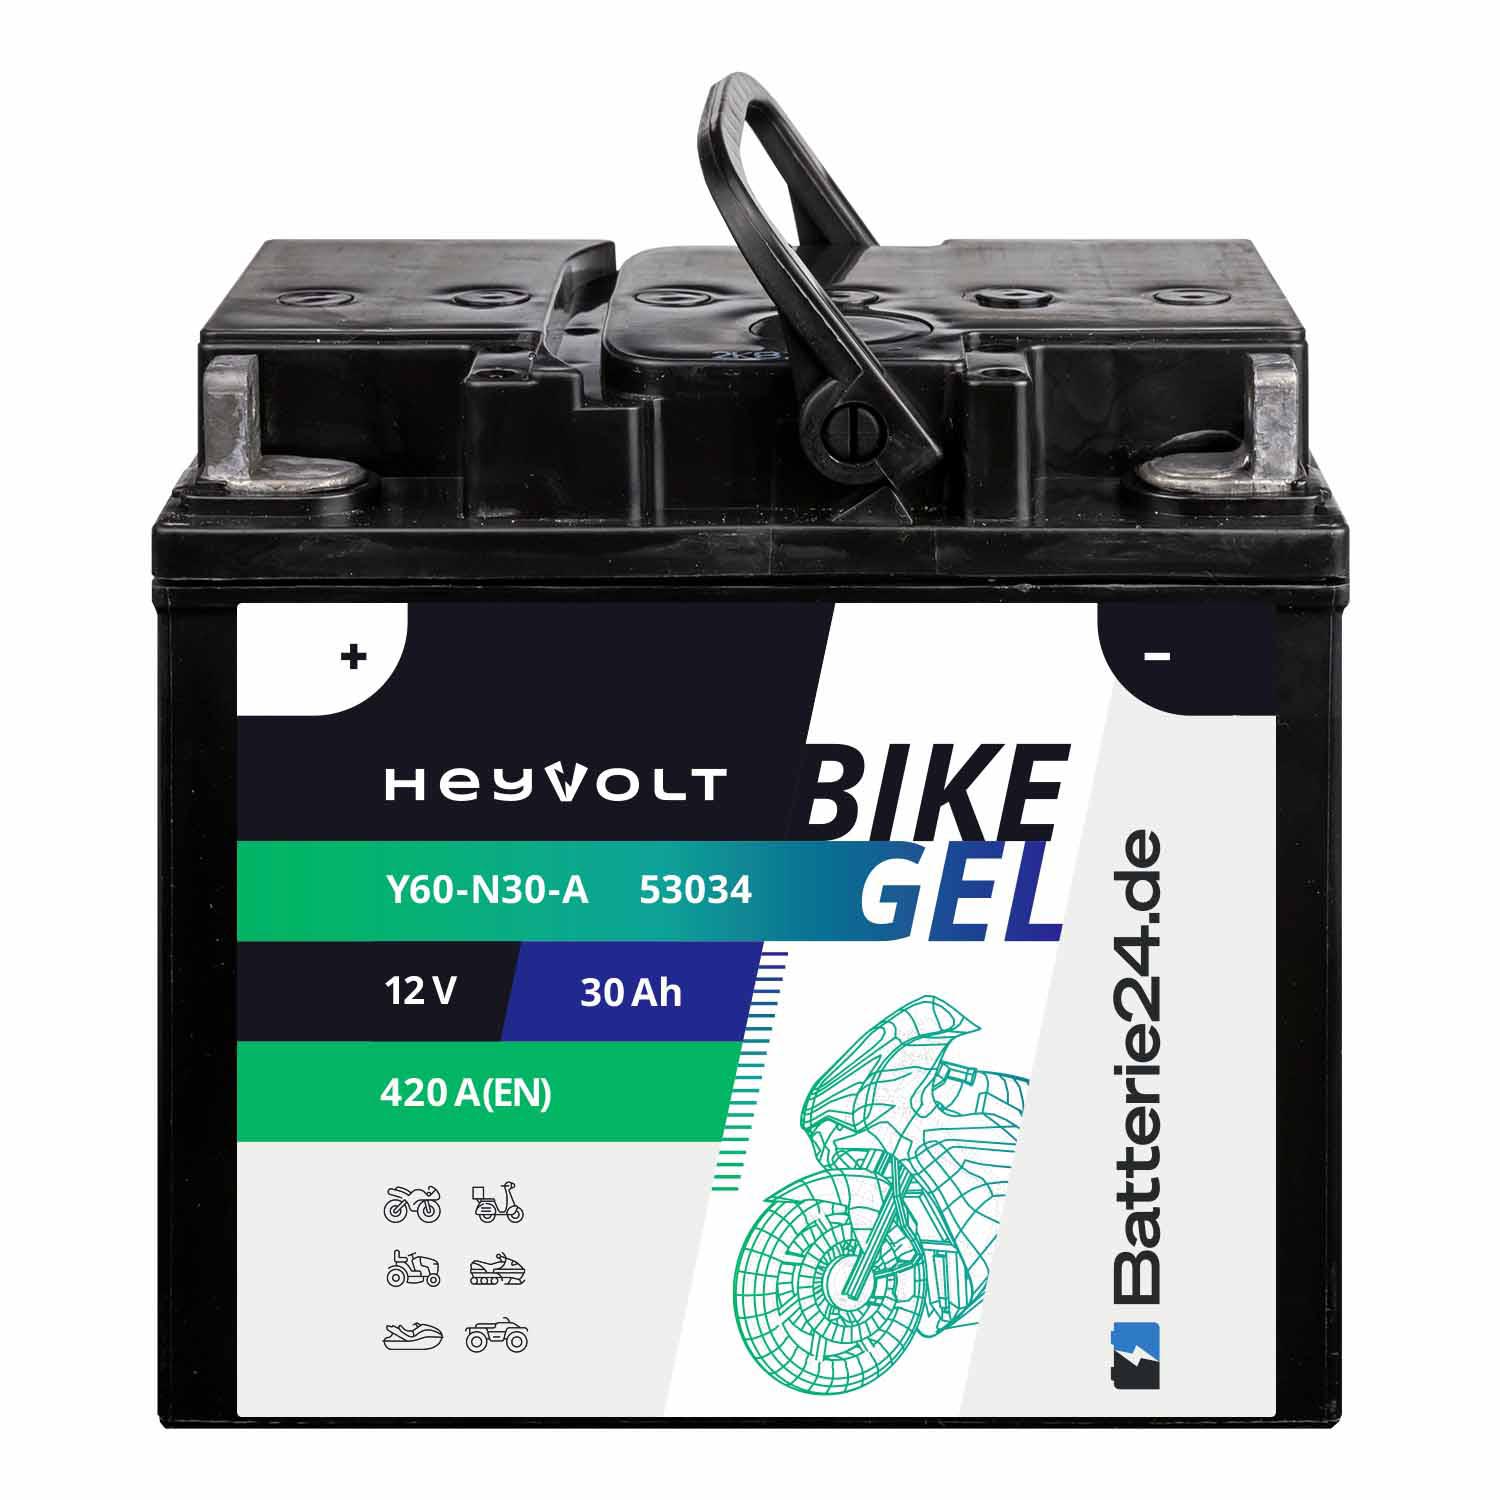 HeyVolt BIKE GEL Motorradbatterie Y60-N30-A 53034 12V 30Ah